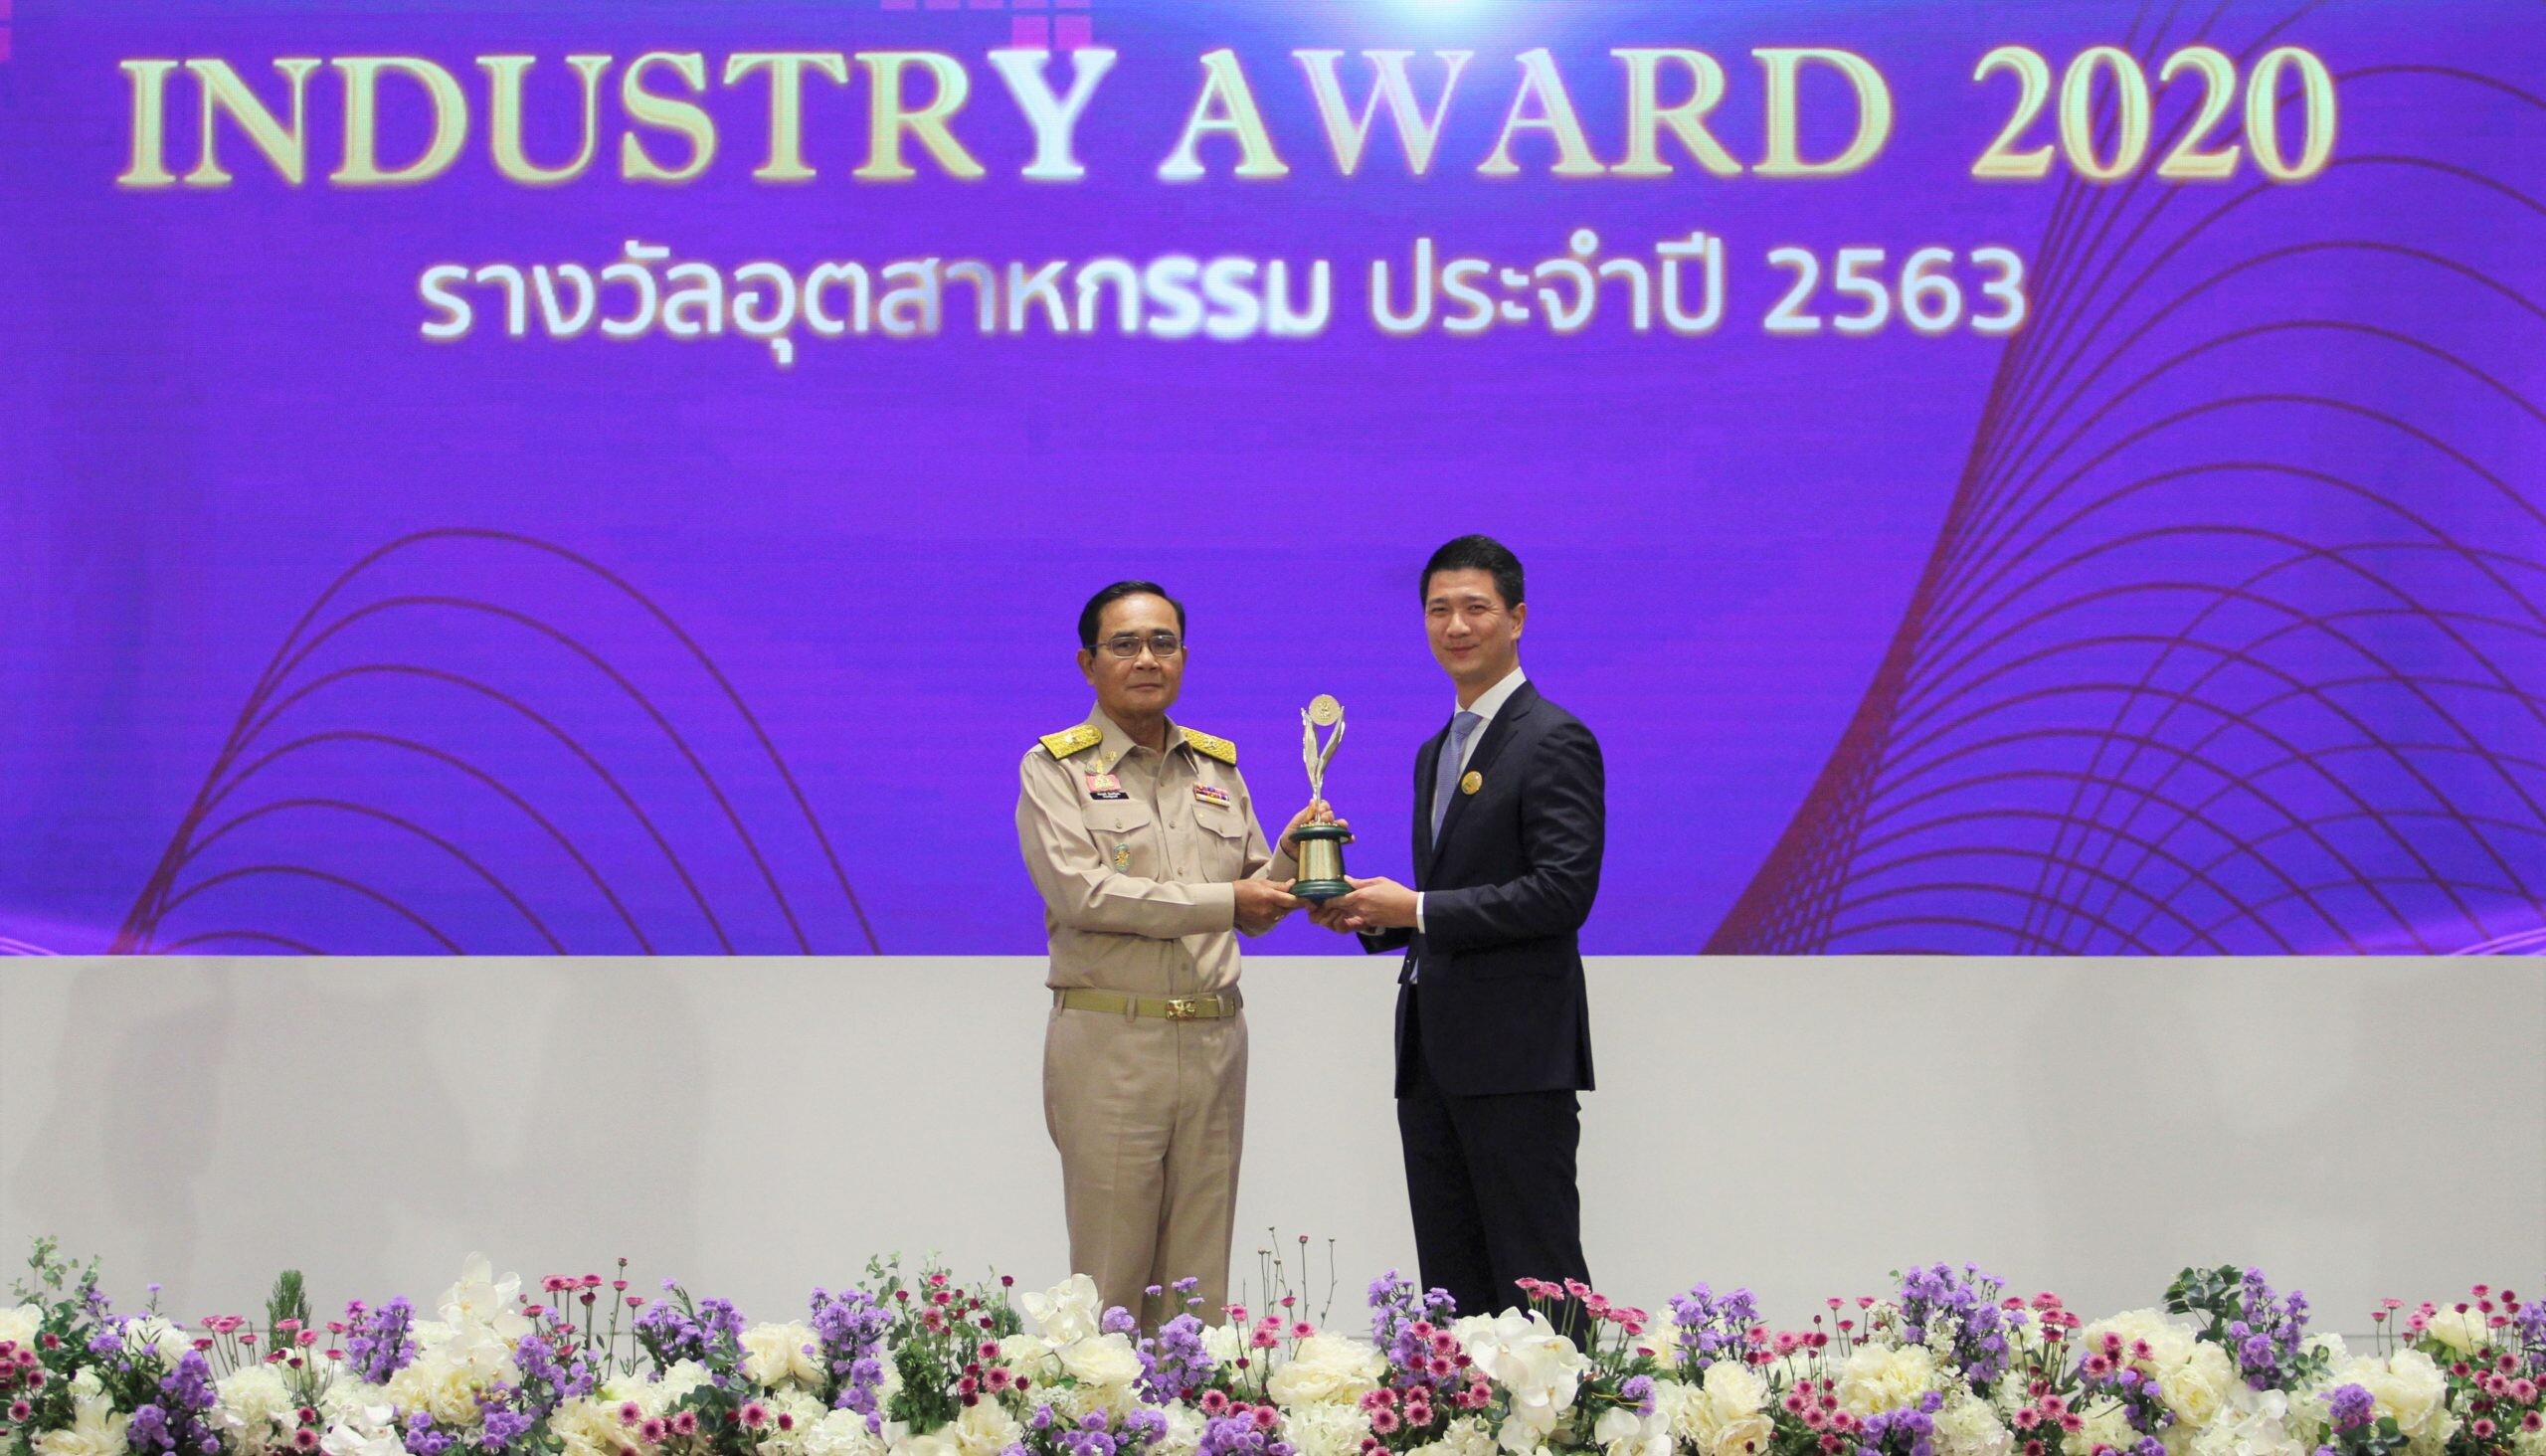 "มาร์ซัน" คว้ารางวัลอุตสาหกรรมดีเด่น ประเภทการบริหารงานคุณภาพ (The Prime Minister's Industry Award 2020)